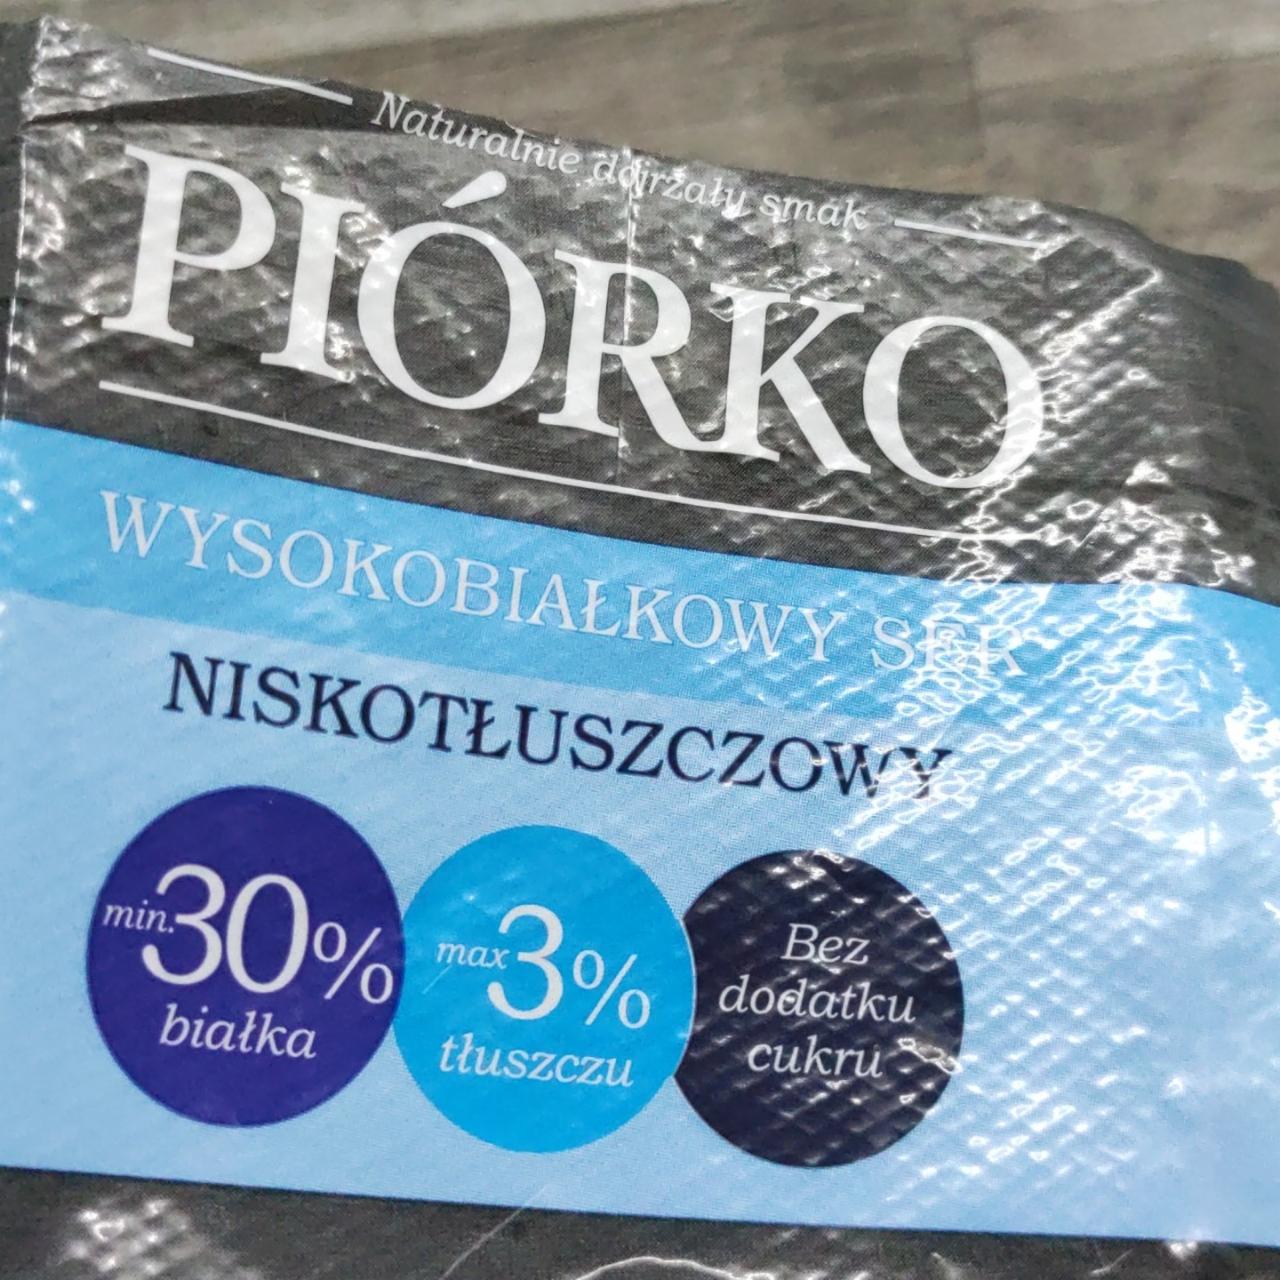 Fotografie - Wysokobialkowy ser niskotluszczowy Piórko